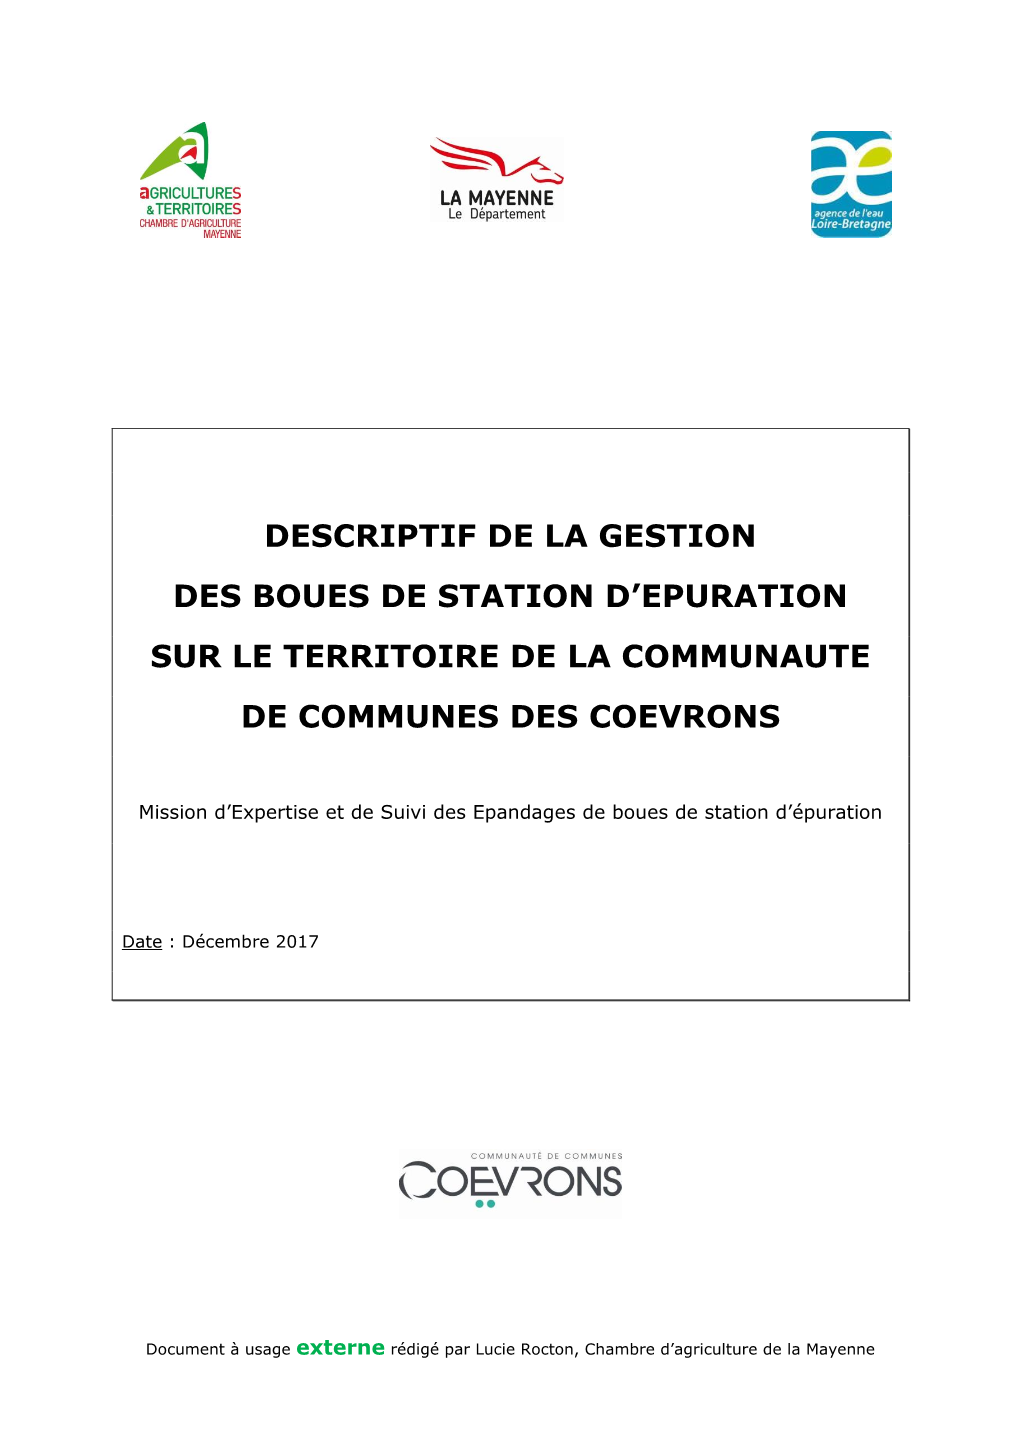 Descriptif De La Gestion Des Boues De Station D'epuration Sur Le Territoire